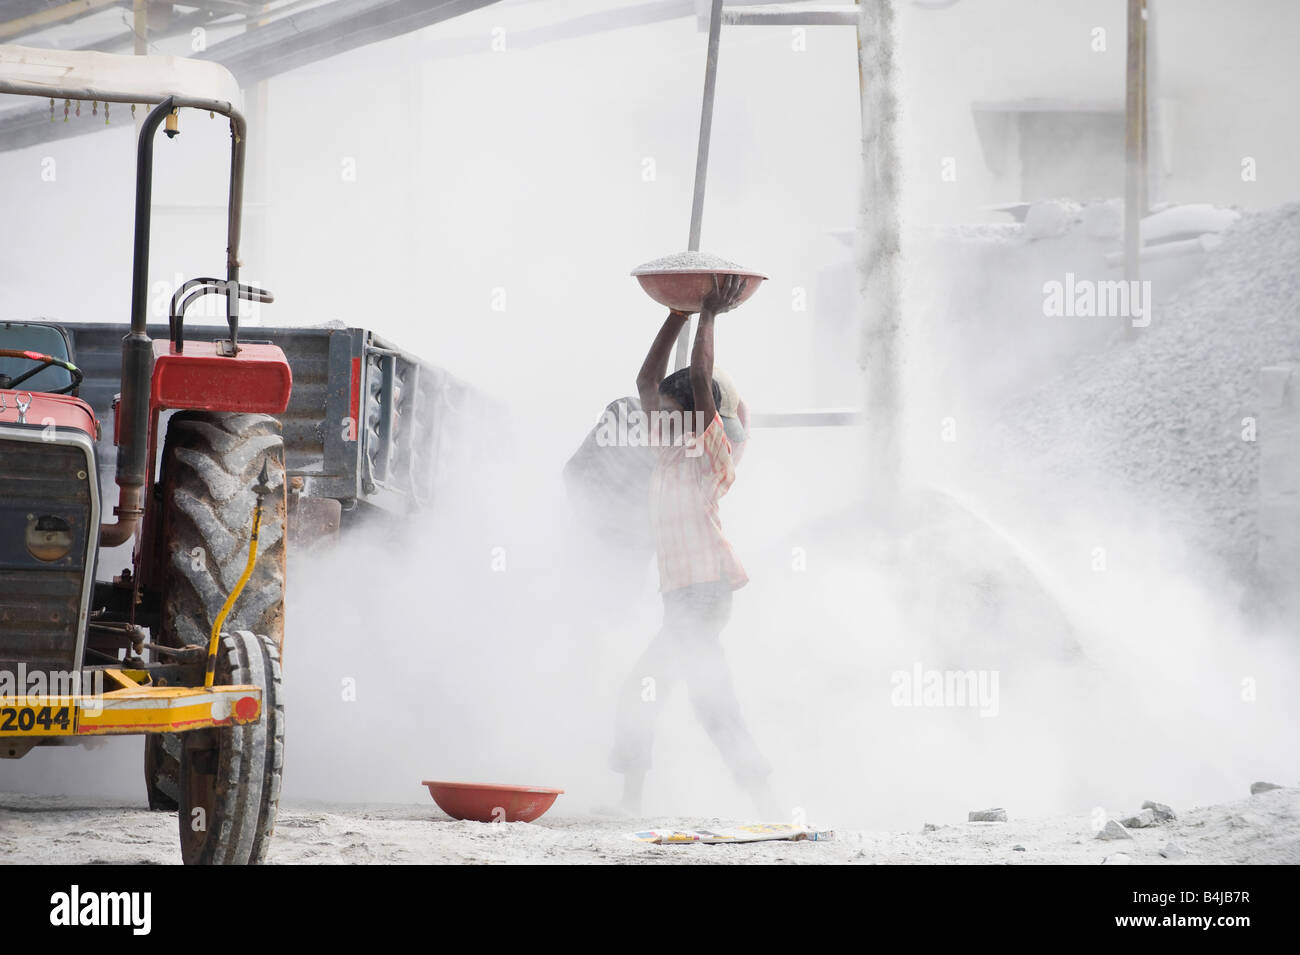 Les hommes indiens de mettre de la pierre concassée dans une remorque, entouré par la poussière, sans protection, à l'écrasement fonctionne. L'Andhra Pradesh. L'Inde Banque D'Images